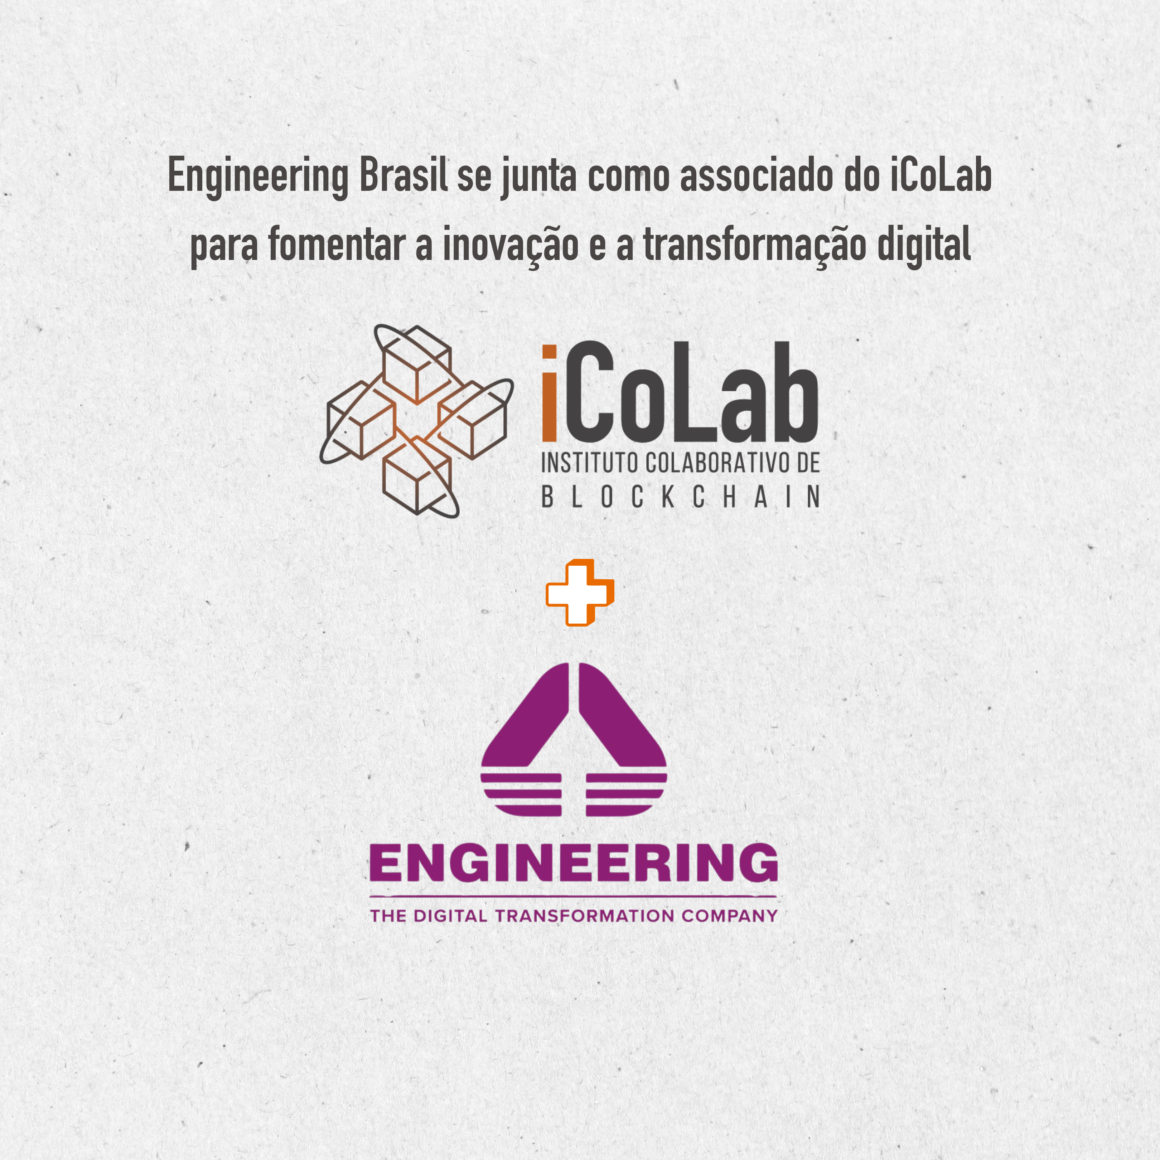 Engineering Brasil se junta ao iCoLab para fomentar a inovação!